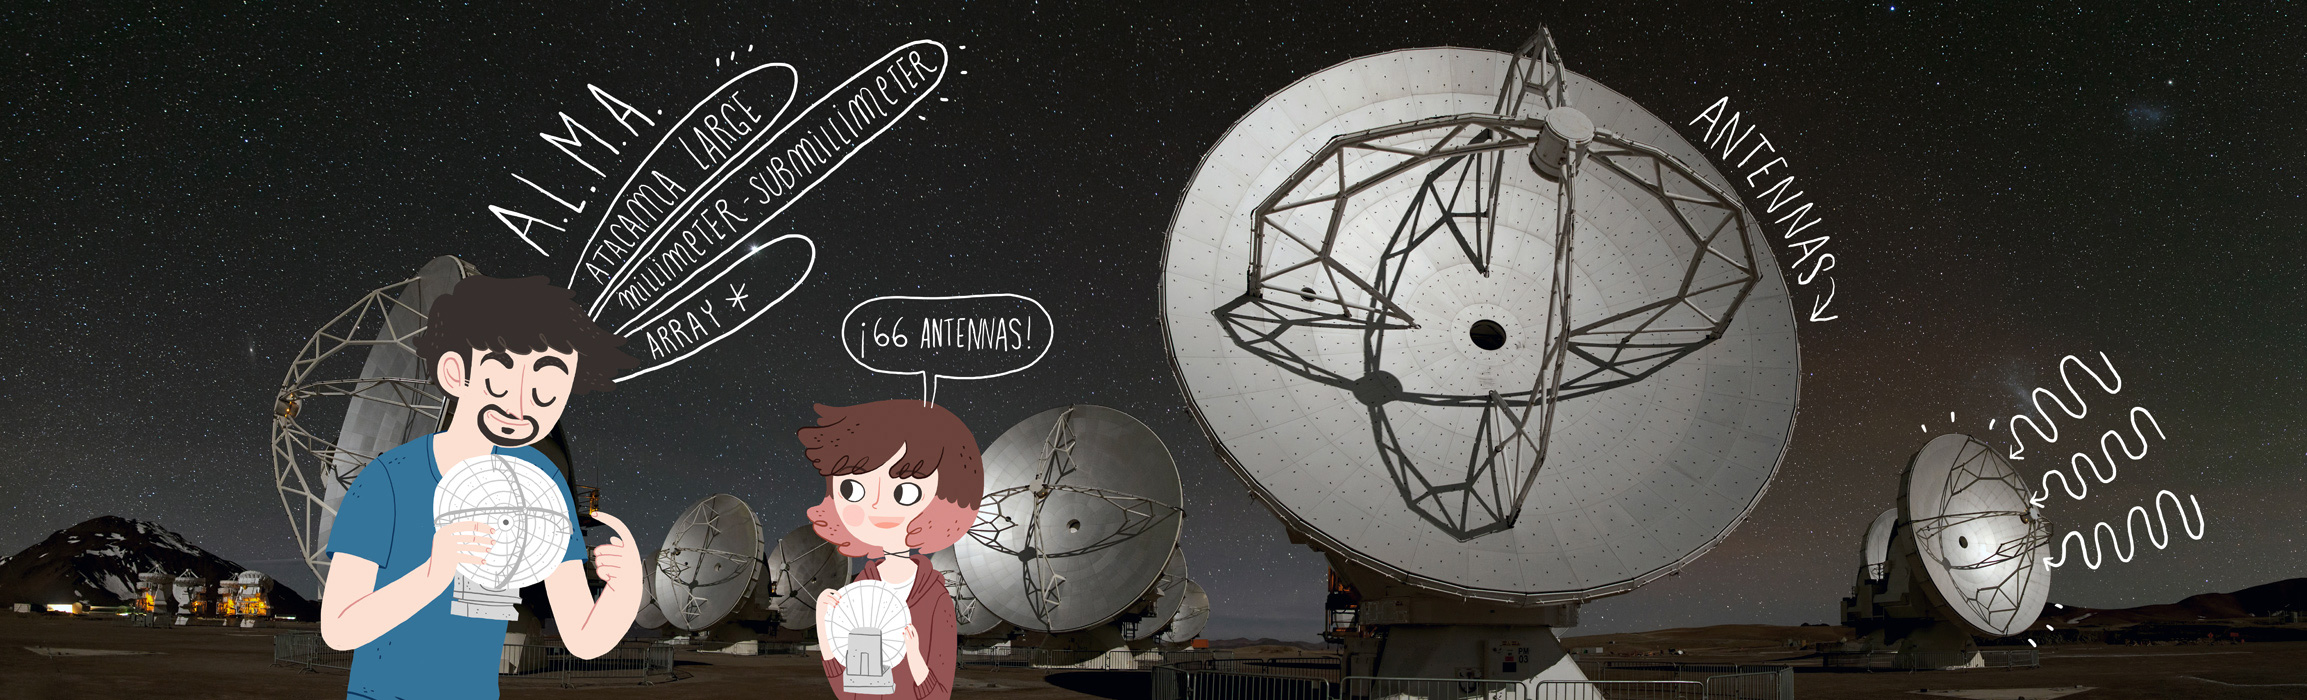 Is ALMA a telescope?